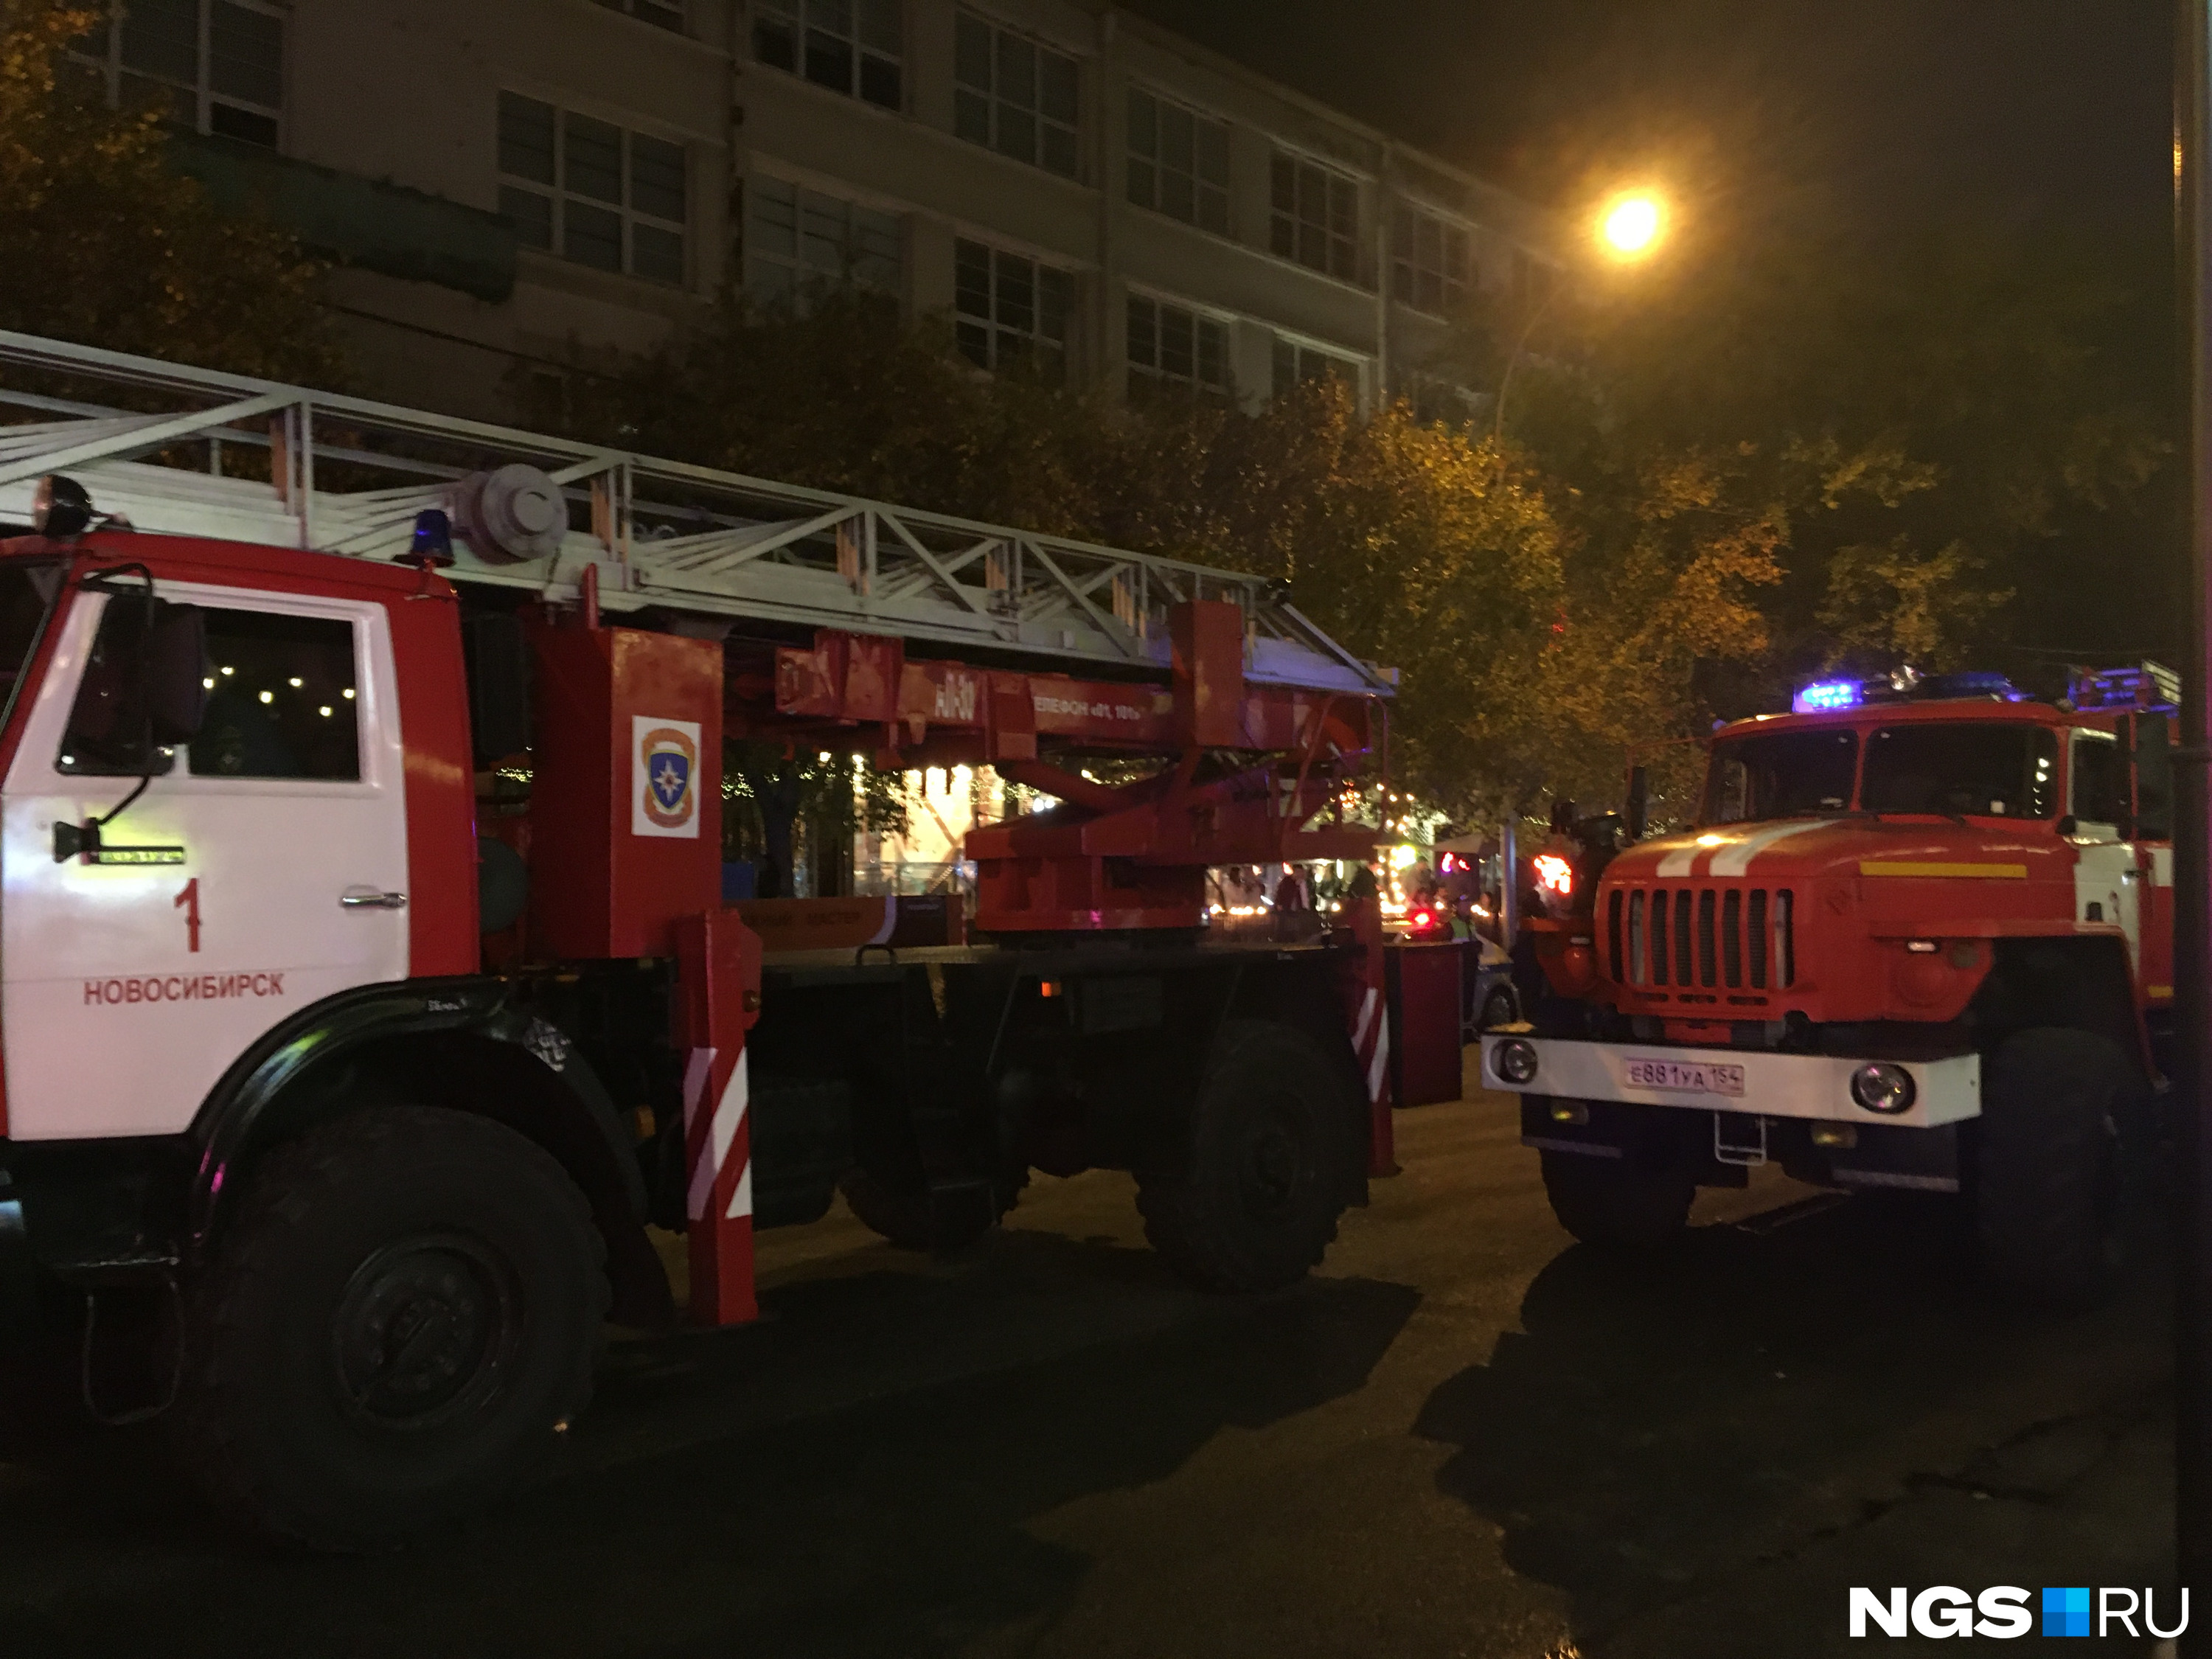 У кого-то подгорело: семь пожарных машин приехали тушить туалет в центре Новосибирска